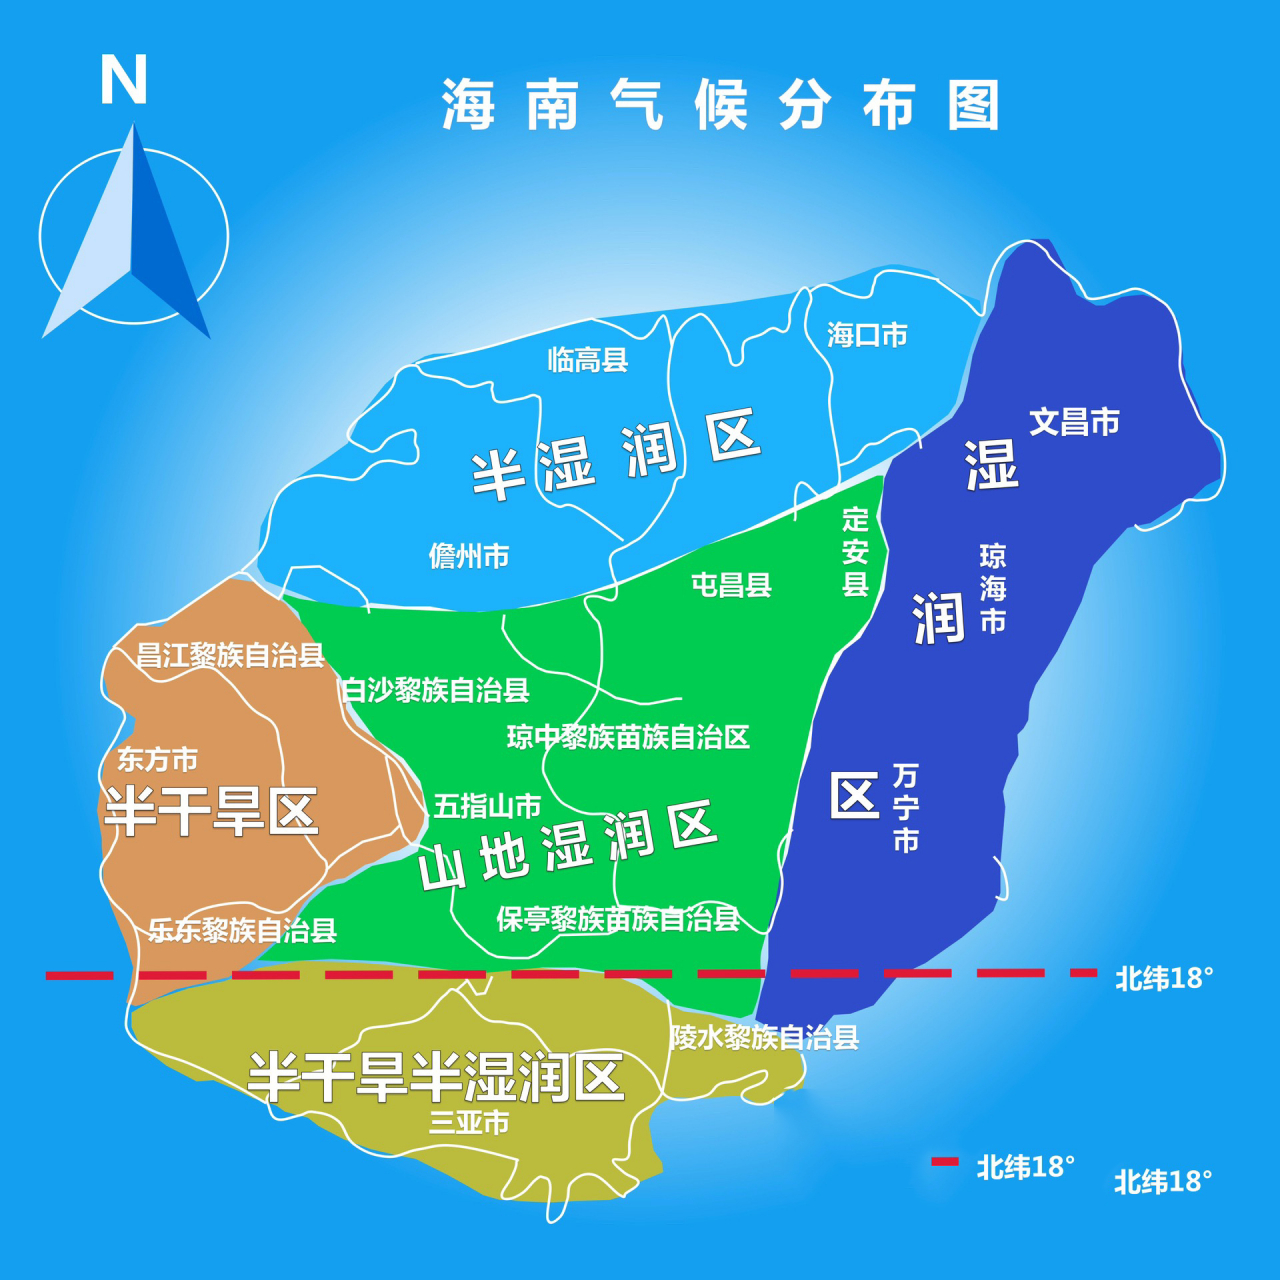 一,陵水清水湾,陵水县被称为全国房价最贵的县城